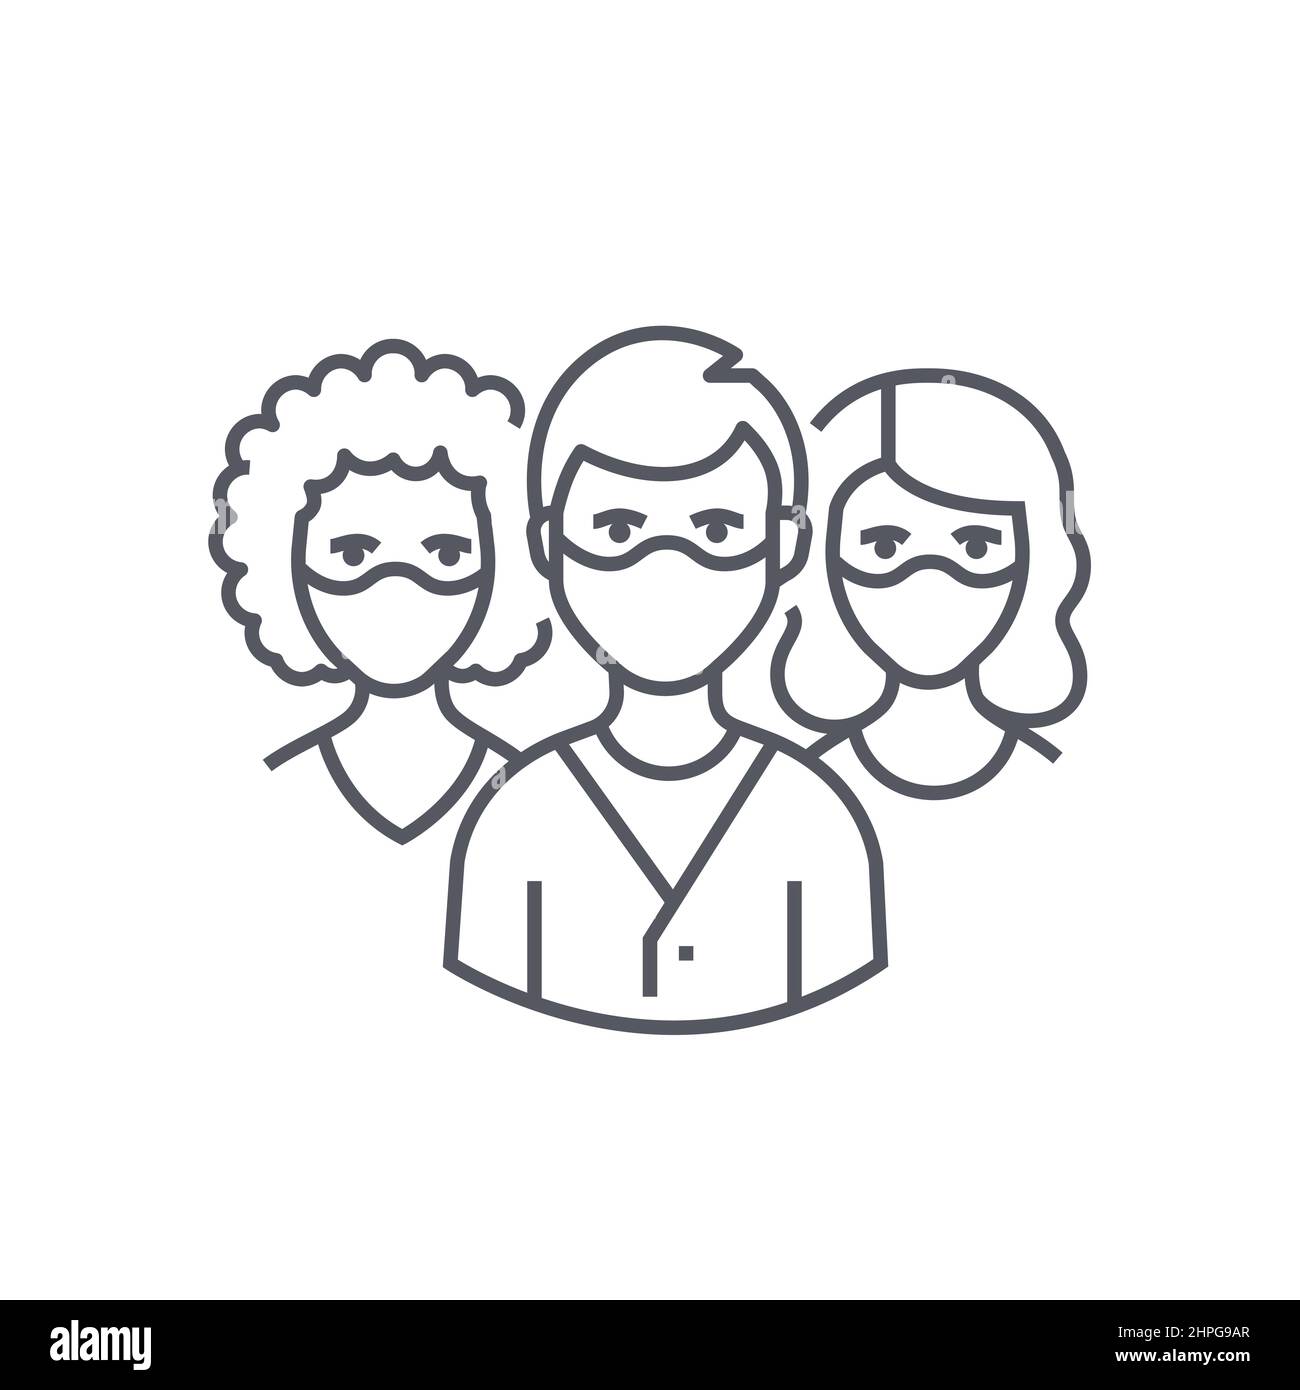 Masked People – modernes Symbol im schwarzen Liniendesign auf weißem Hintergrund. Ordentliches, detailliertes Bild von Mann und zwei Frauen, die wieder Atemschutz tragen Stock Vektor